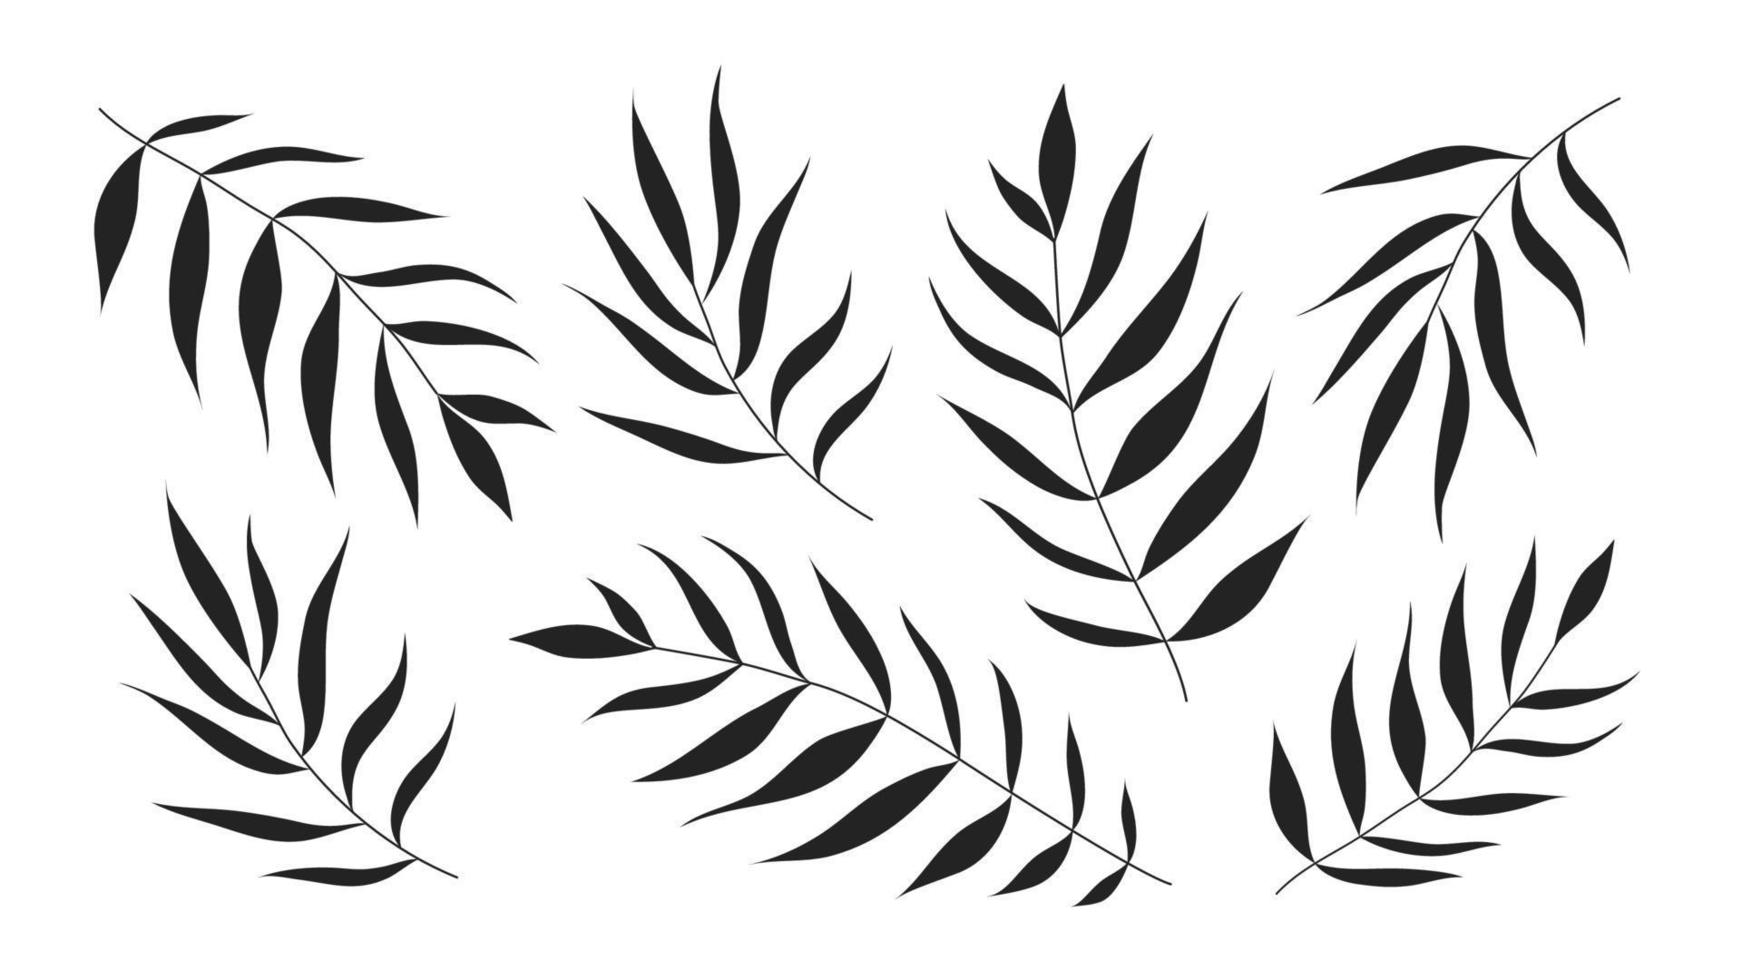 foglie di palma nere isoted su sfondo bianco. illustrazione vettoriale silhouette nera.